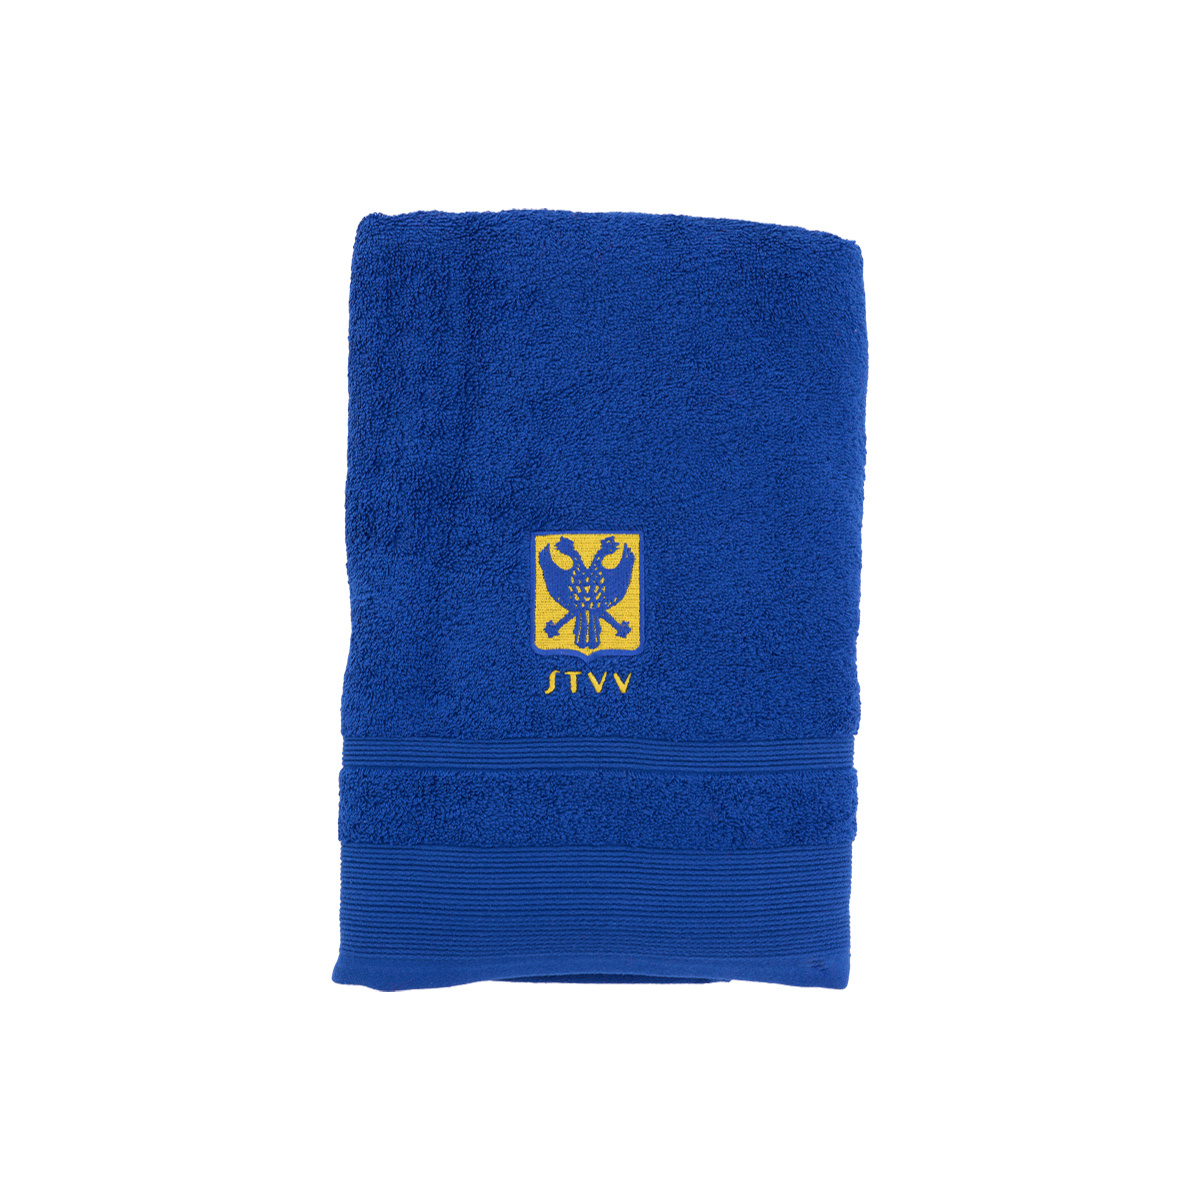 Topfanz Handdoek 70x140 Blauw logo